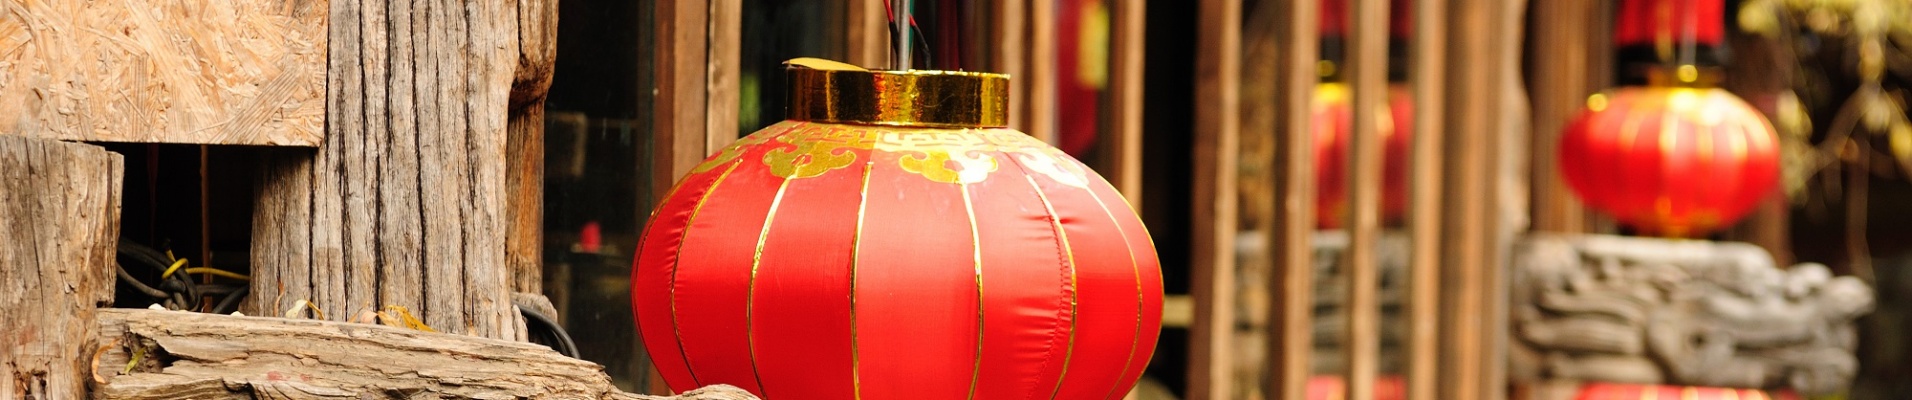 Lanternes rouges dans le village traditionnel de Lijiang